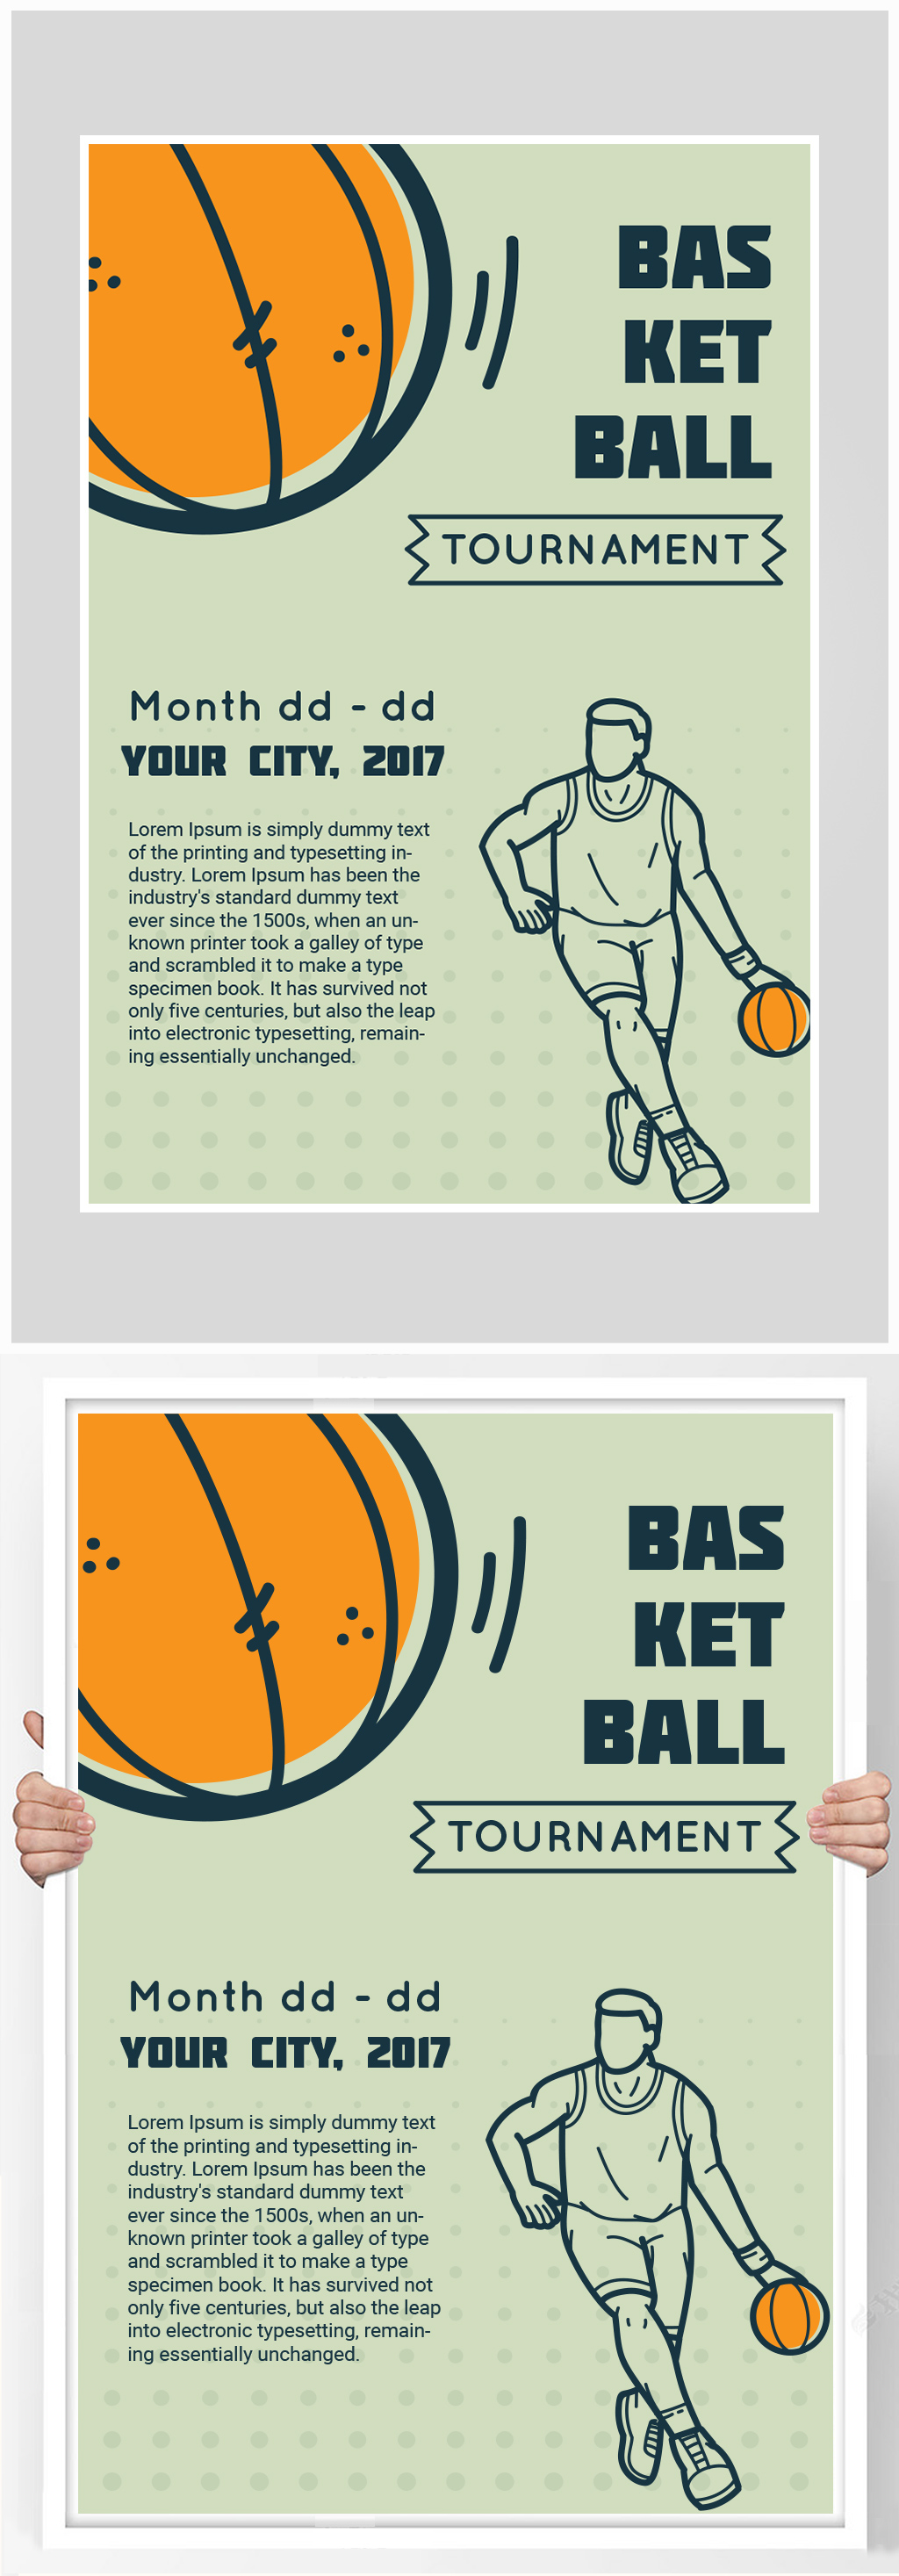 篮球比赛英语海报手绘图片